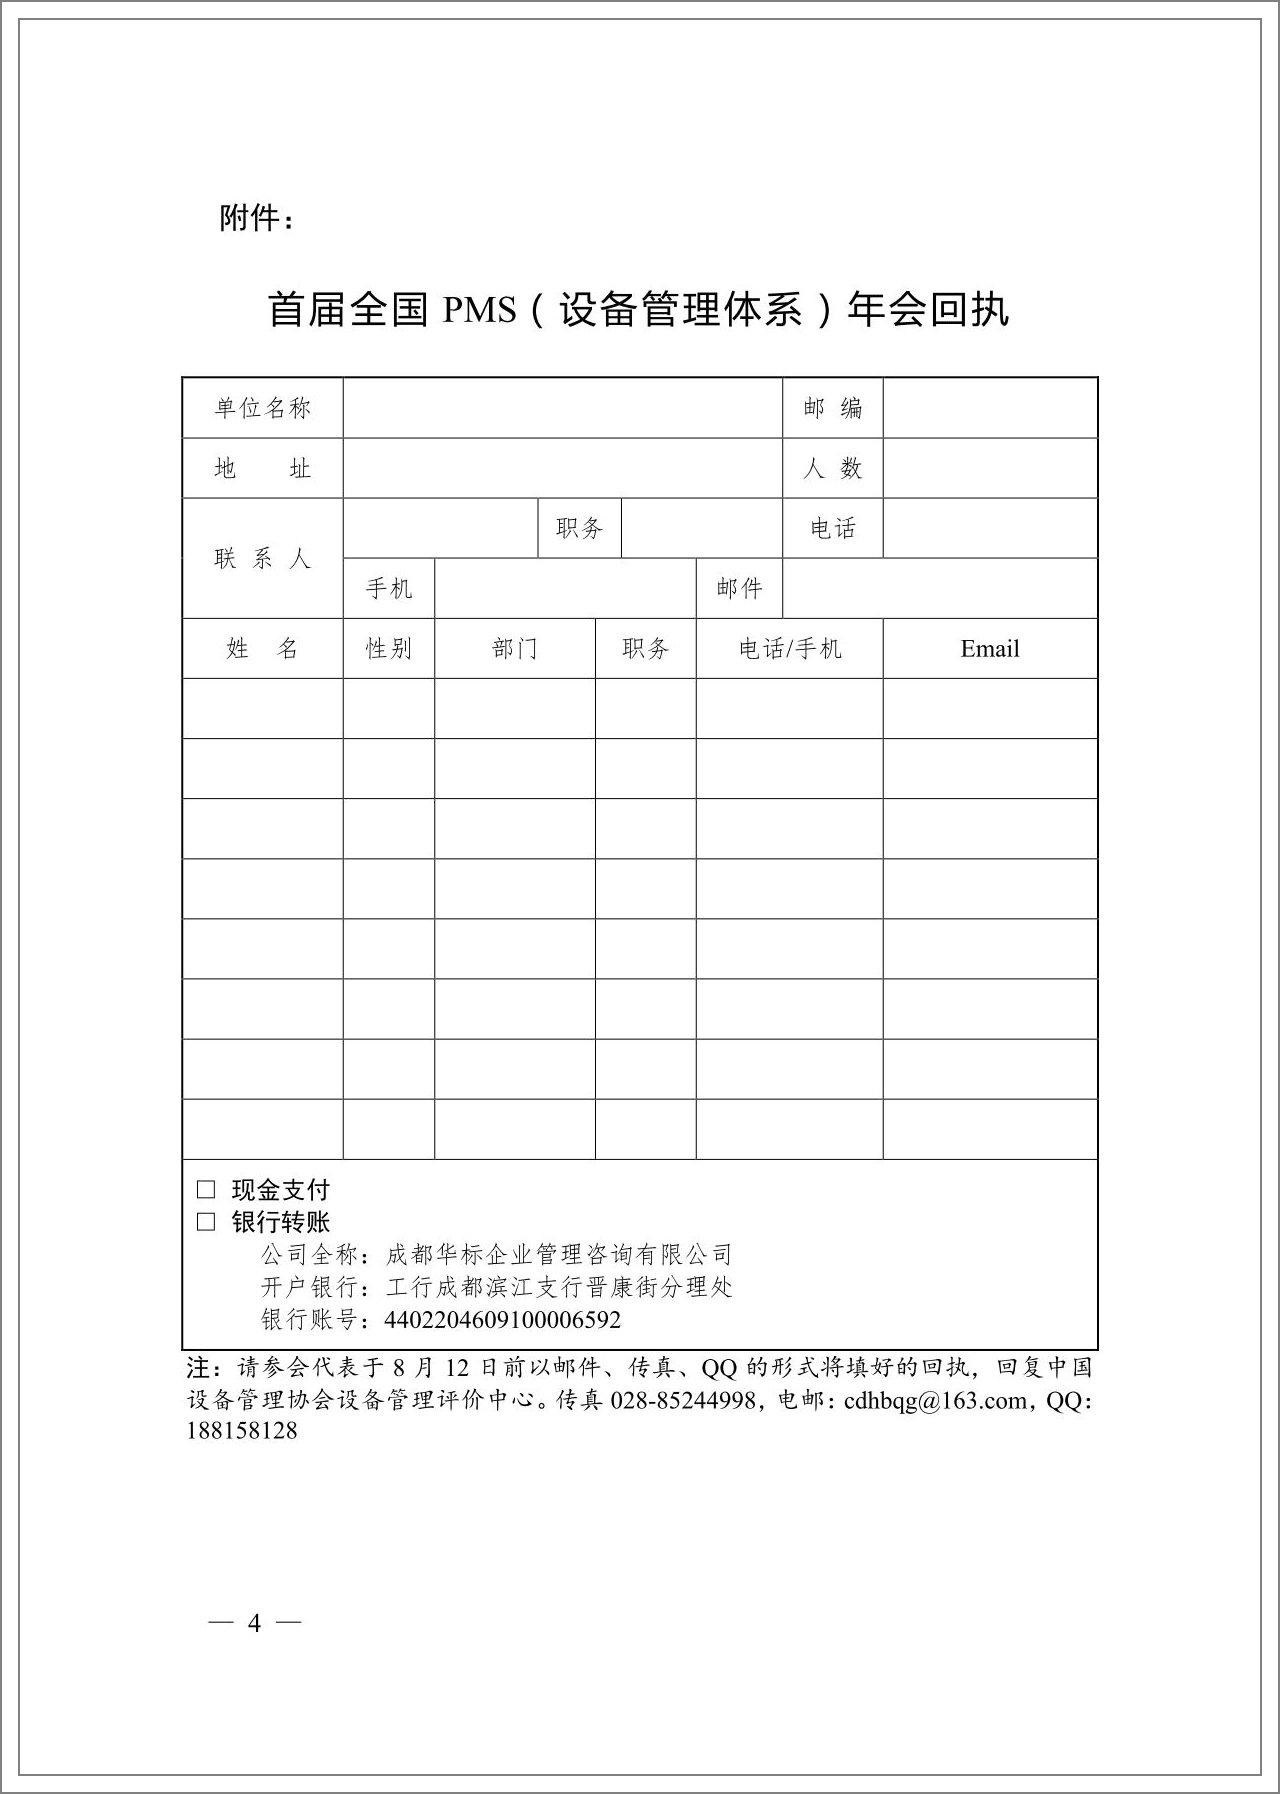 中设协2013全国PMS设备管理体系年会通知_03.jpg